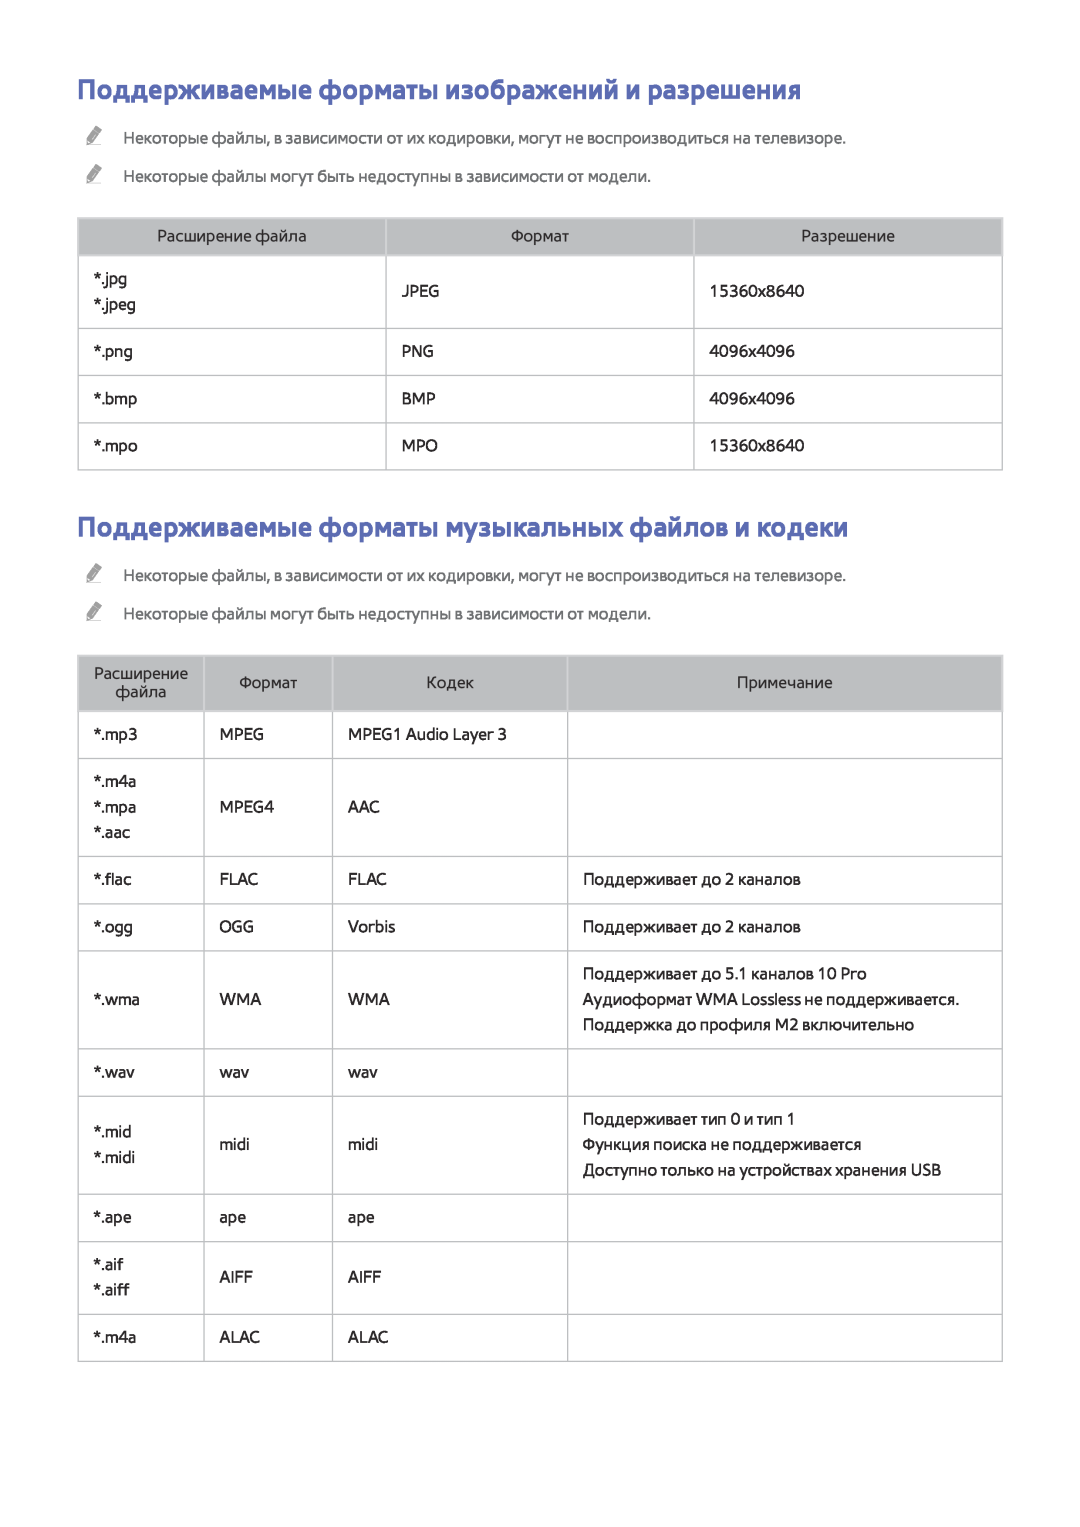 Samsung UE49J5300AUXRU Поддерживаемые форматы изображений и разрешения, Поддерживаемые форматы музыкальных файлов и кодеки 